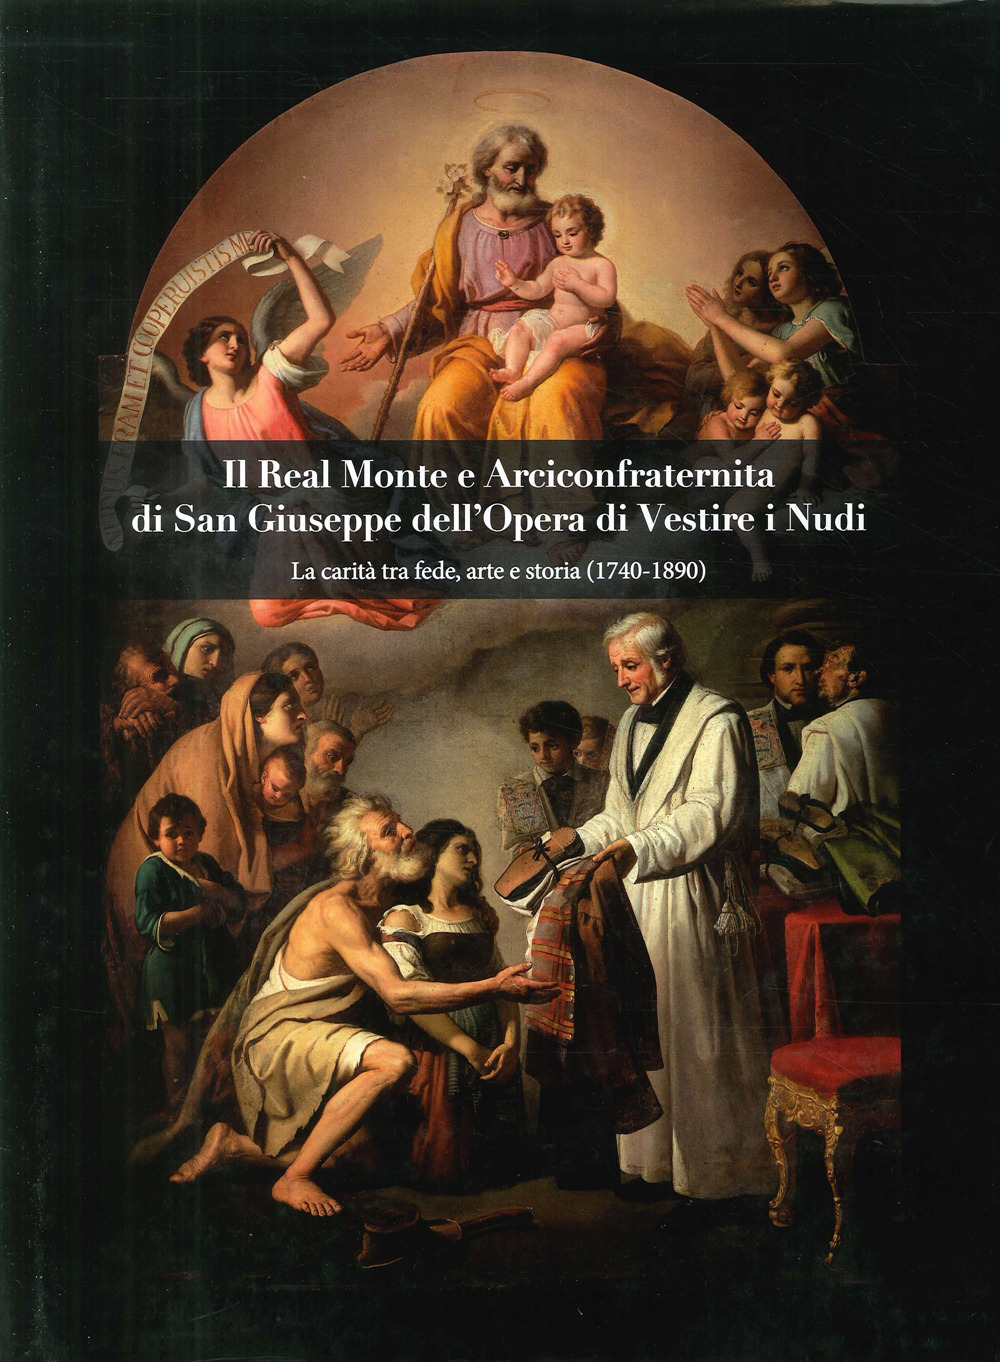 Il Real Monte e Arciconfraternita di San Giuseppe dell'Opera di Vestire i Nudi. La carità tra fede, arte e storia (1740-1890)